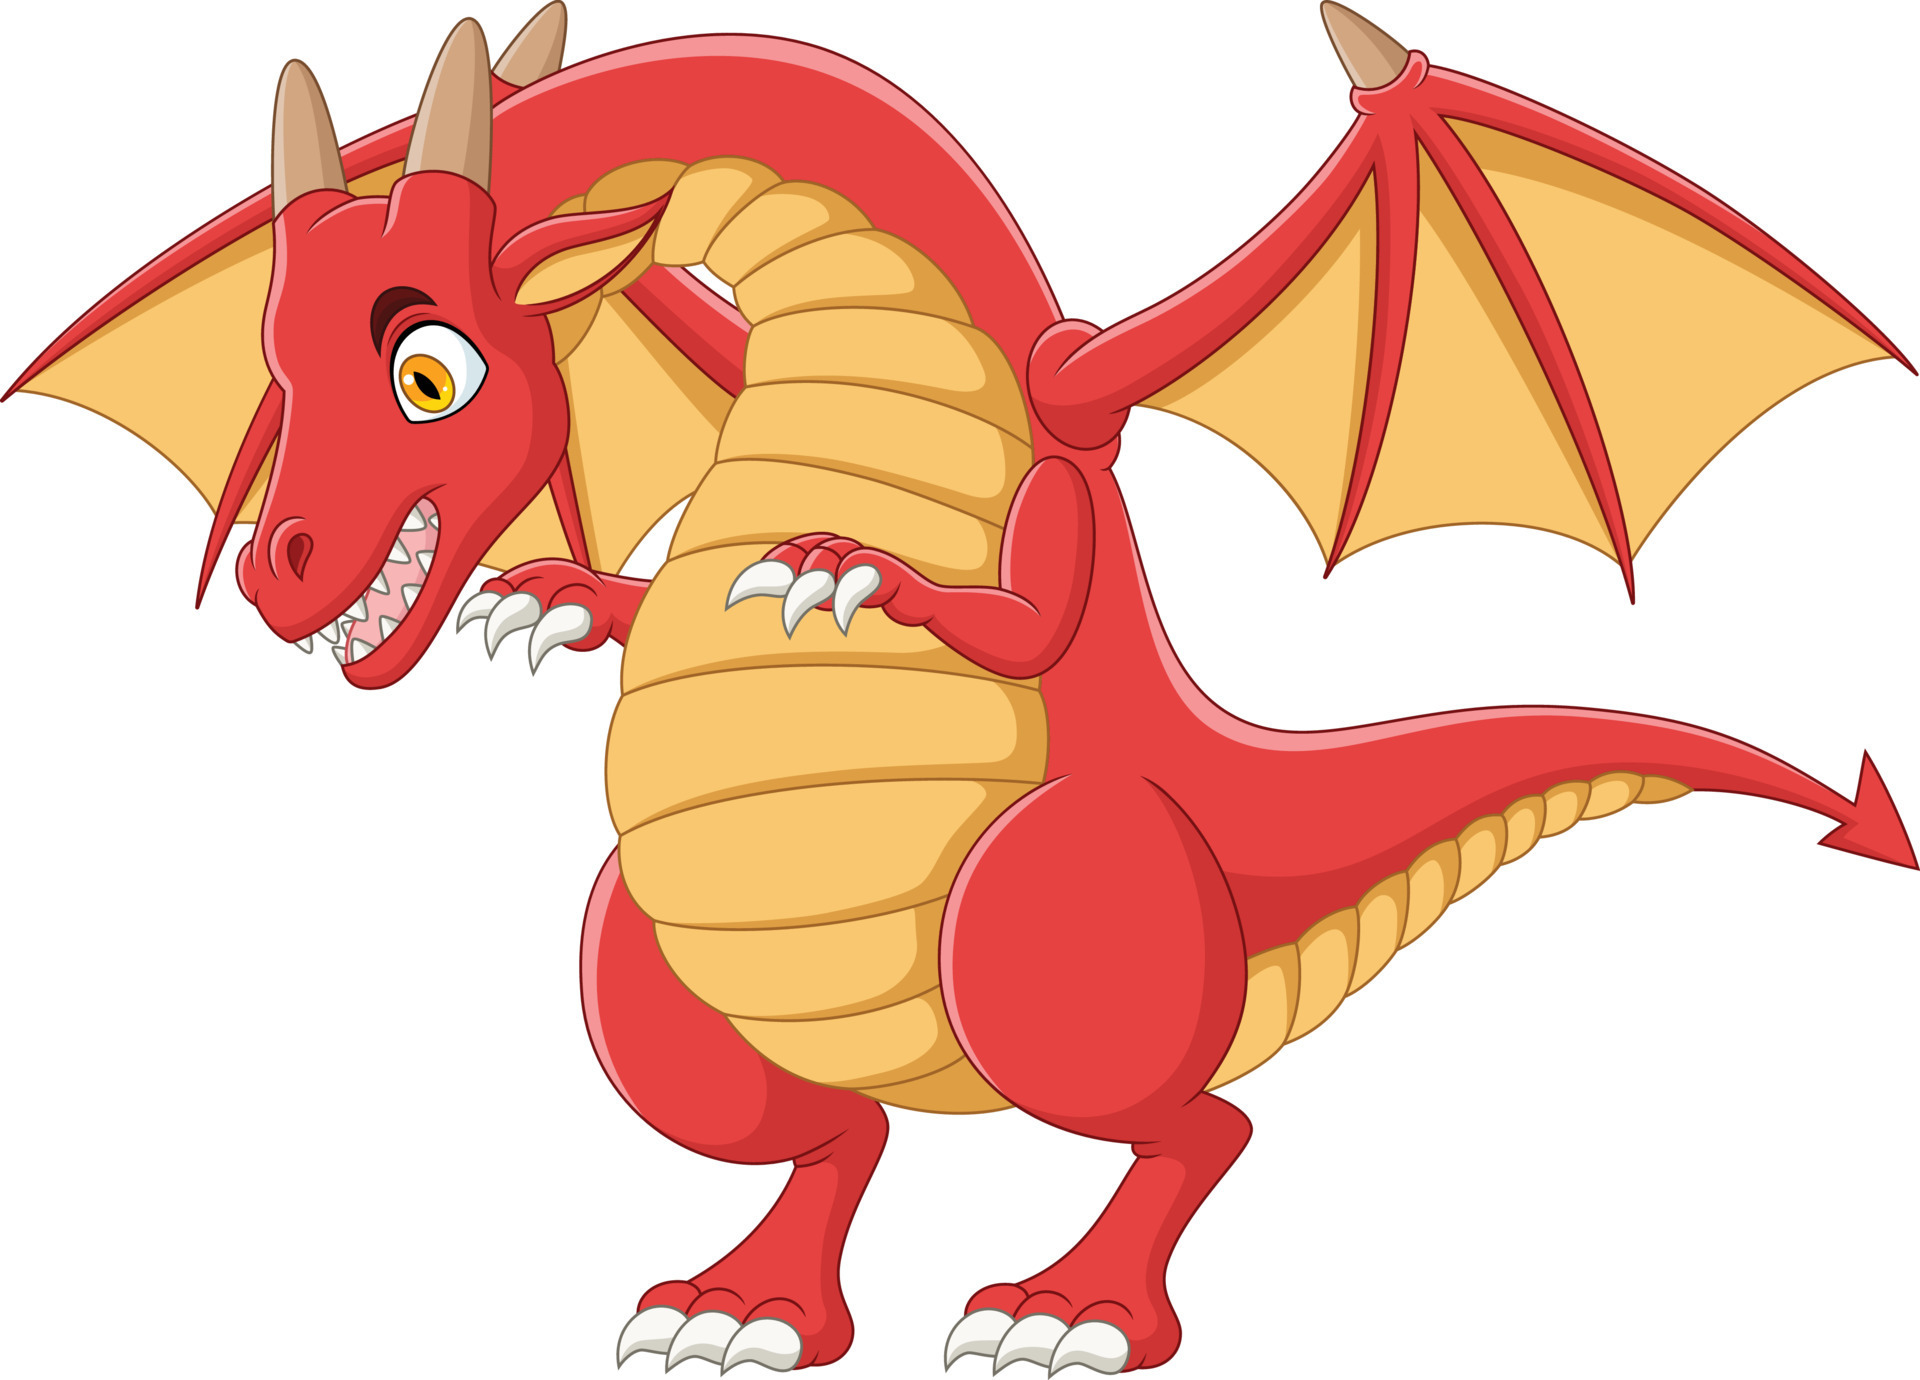 Desenho animado pequeno dragão vermelho cuspindo ilustração